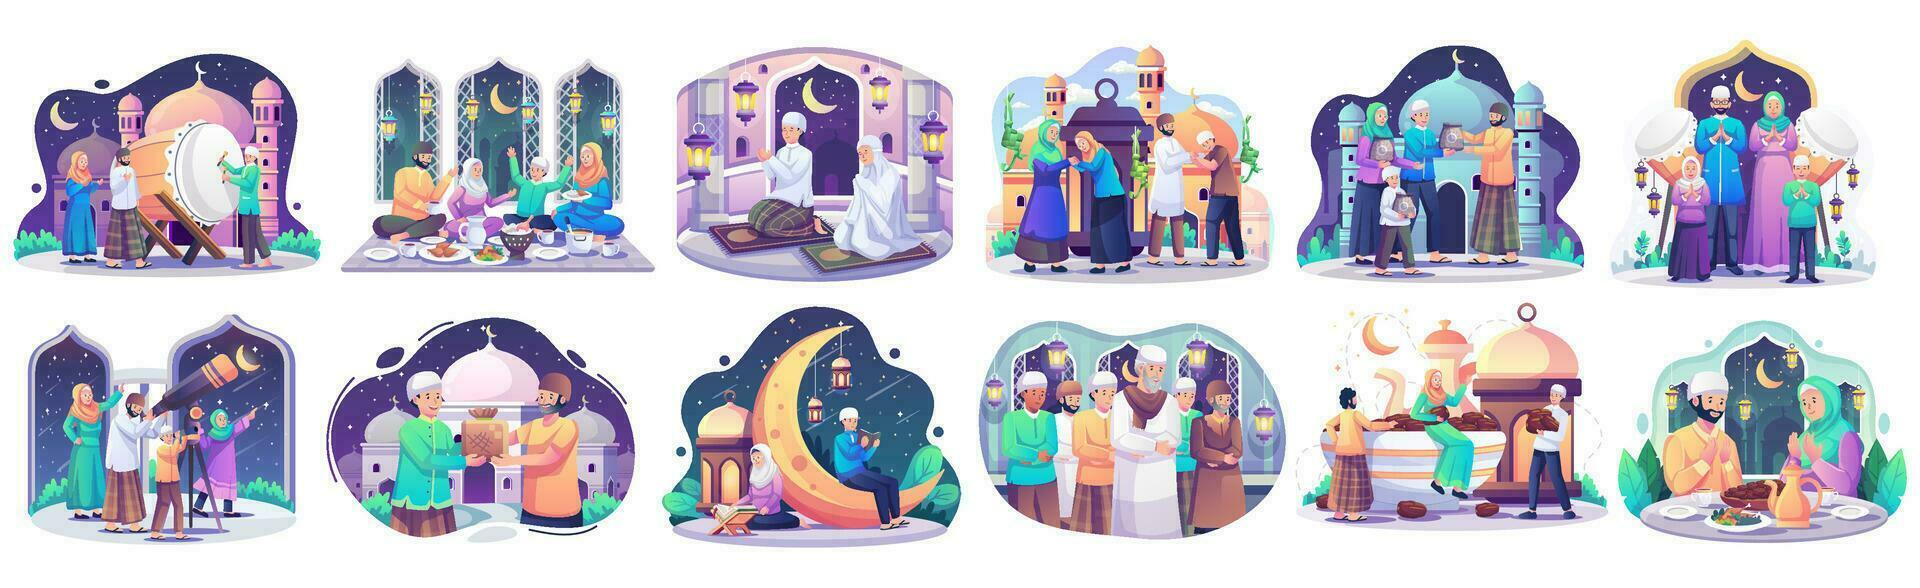 uppsättning samling av ramadan begrepp illustration. Lycklig muslim människor fira helig månad ramadan, iftar fest, läsning Koranen, taraweeh, eid mubarak hälsning. vektor illustration